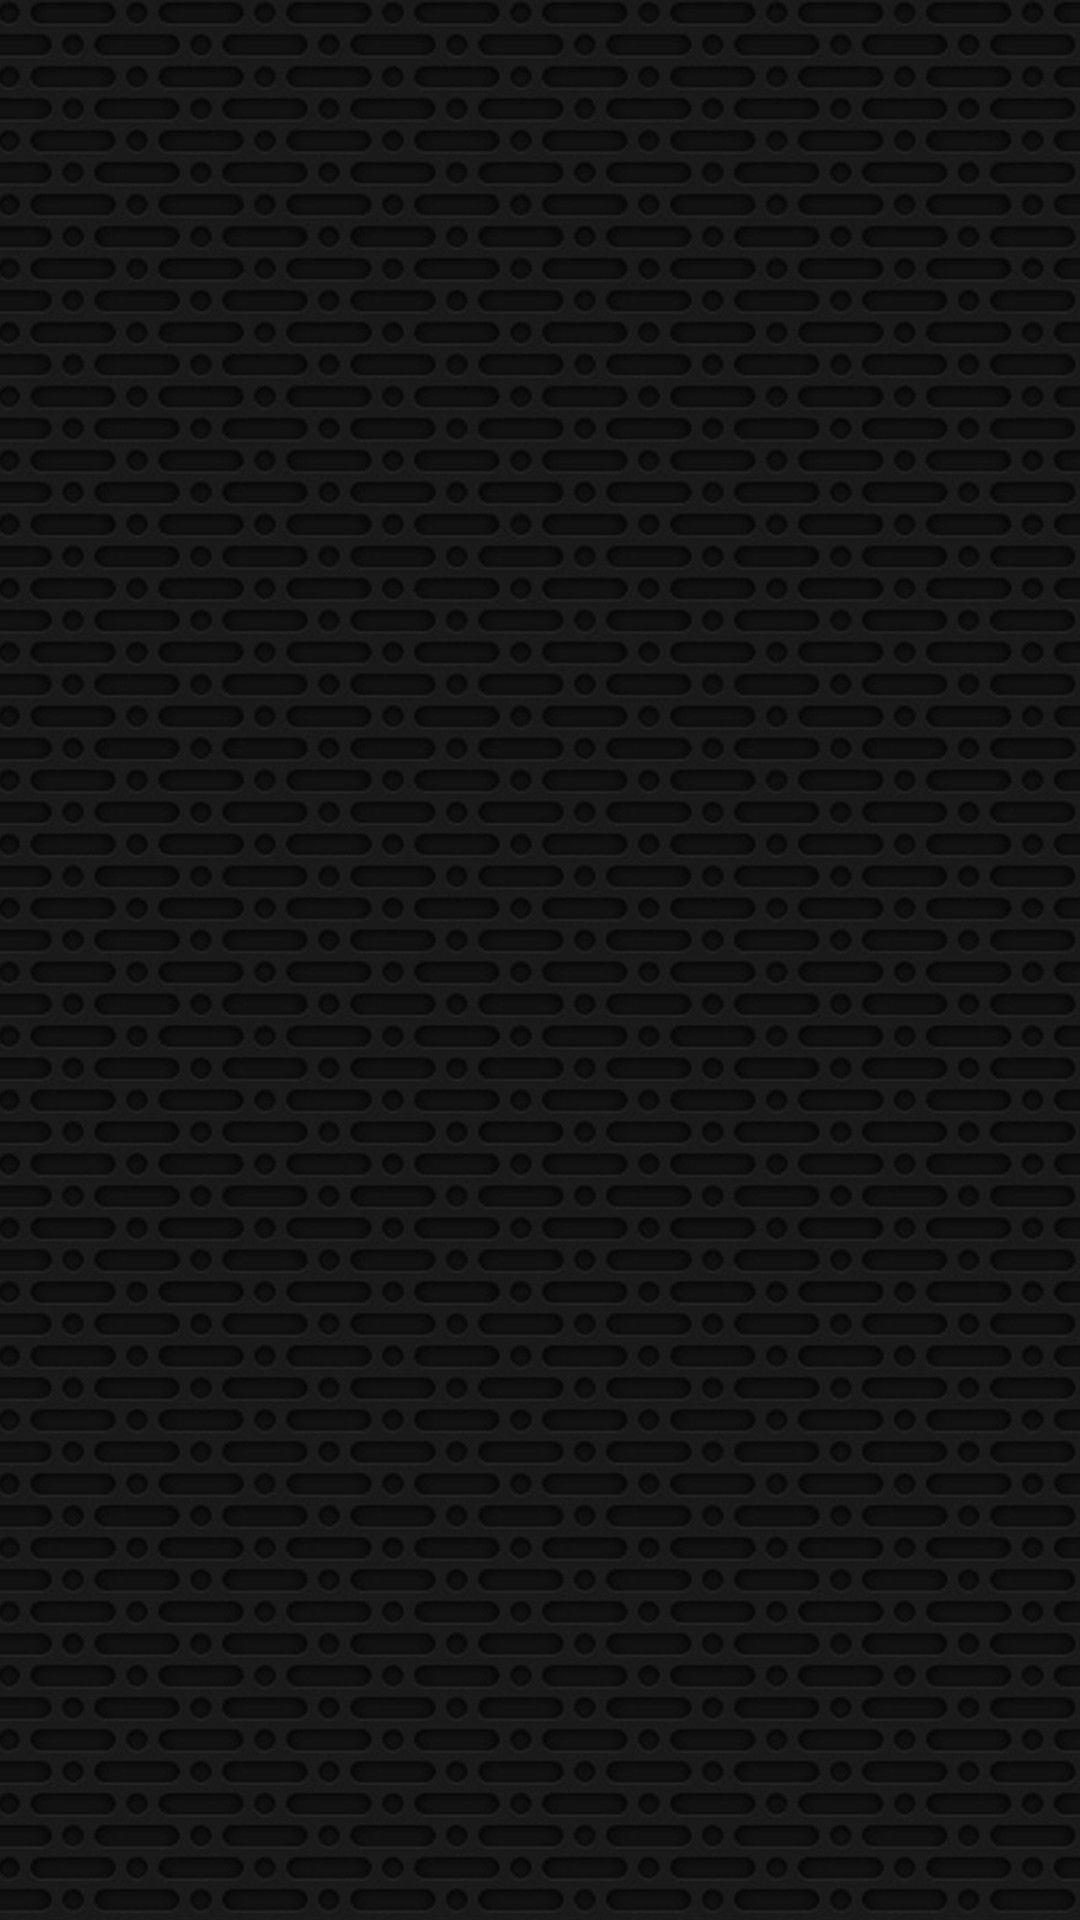 Best Dark iPhone Wallpapers - Top Free Best Dark iPhone Backgrounds ...